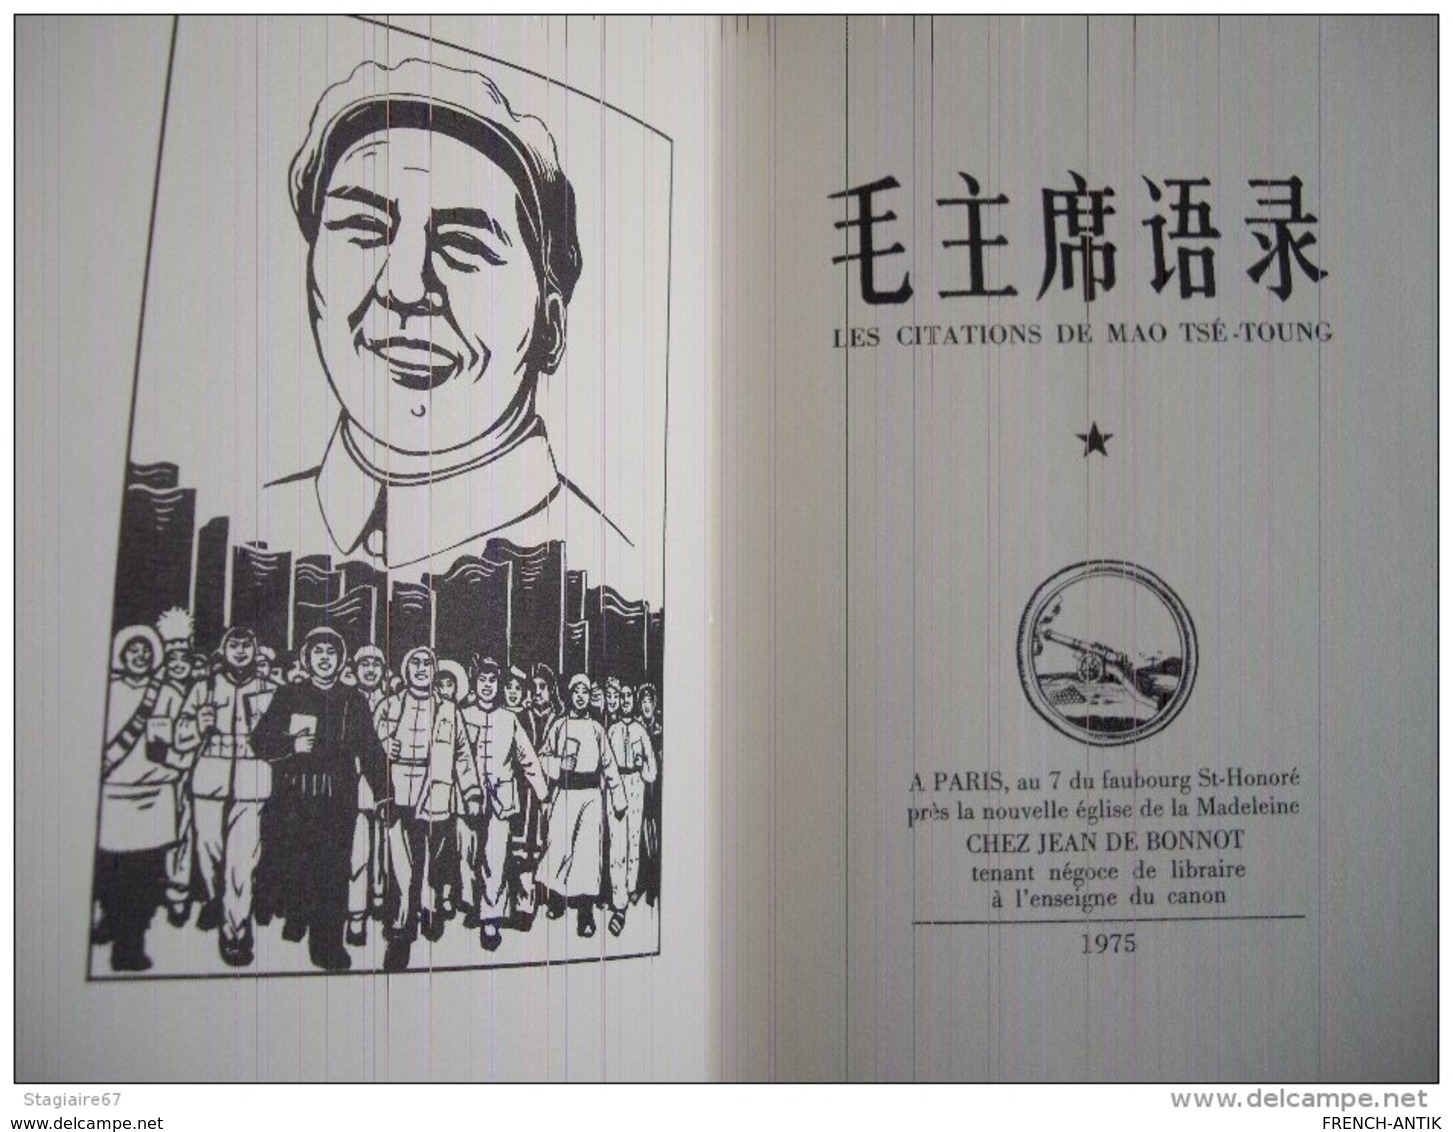 LE LIVRE ROUGE DE MAO TSE TOUNG EN EDITION DE BIBLIOPHILE CHINOIS FRANCAIS - Non Classés